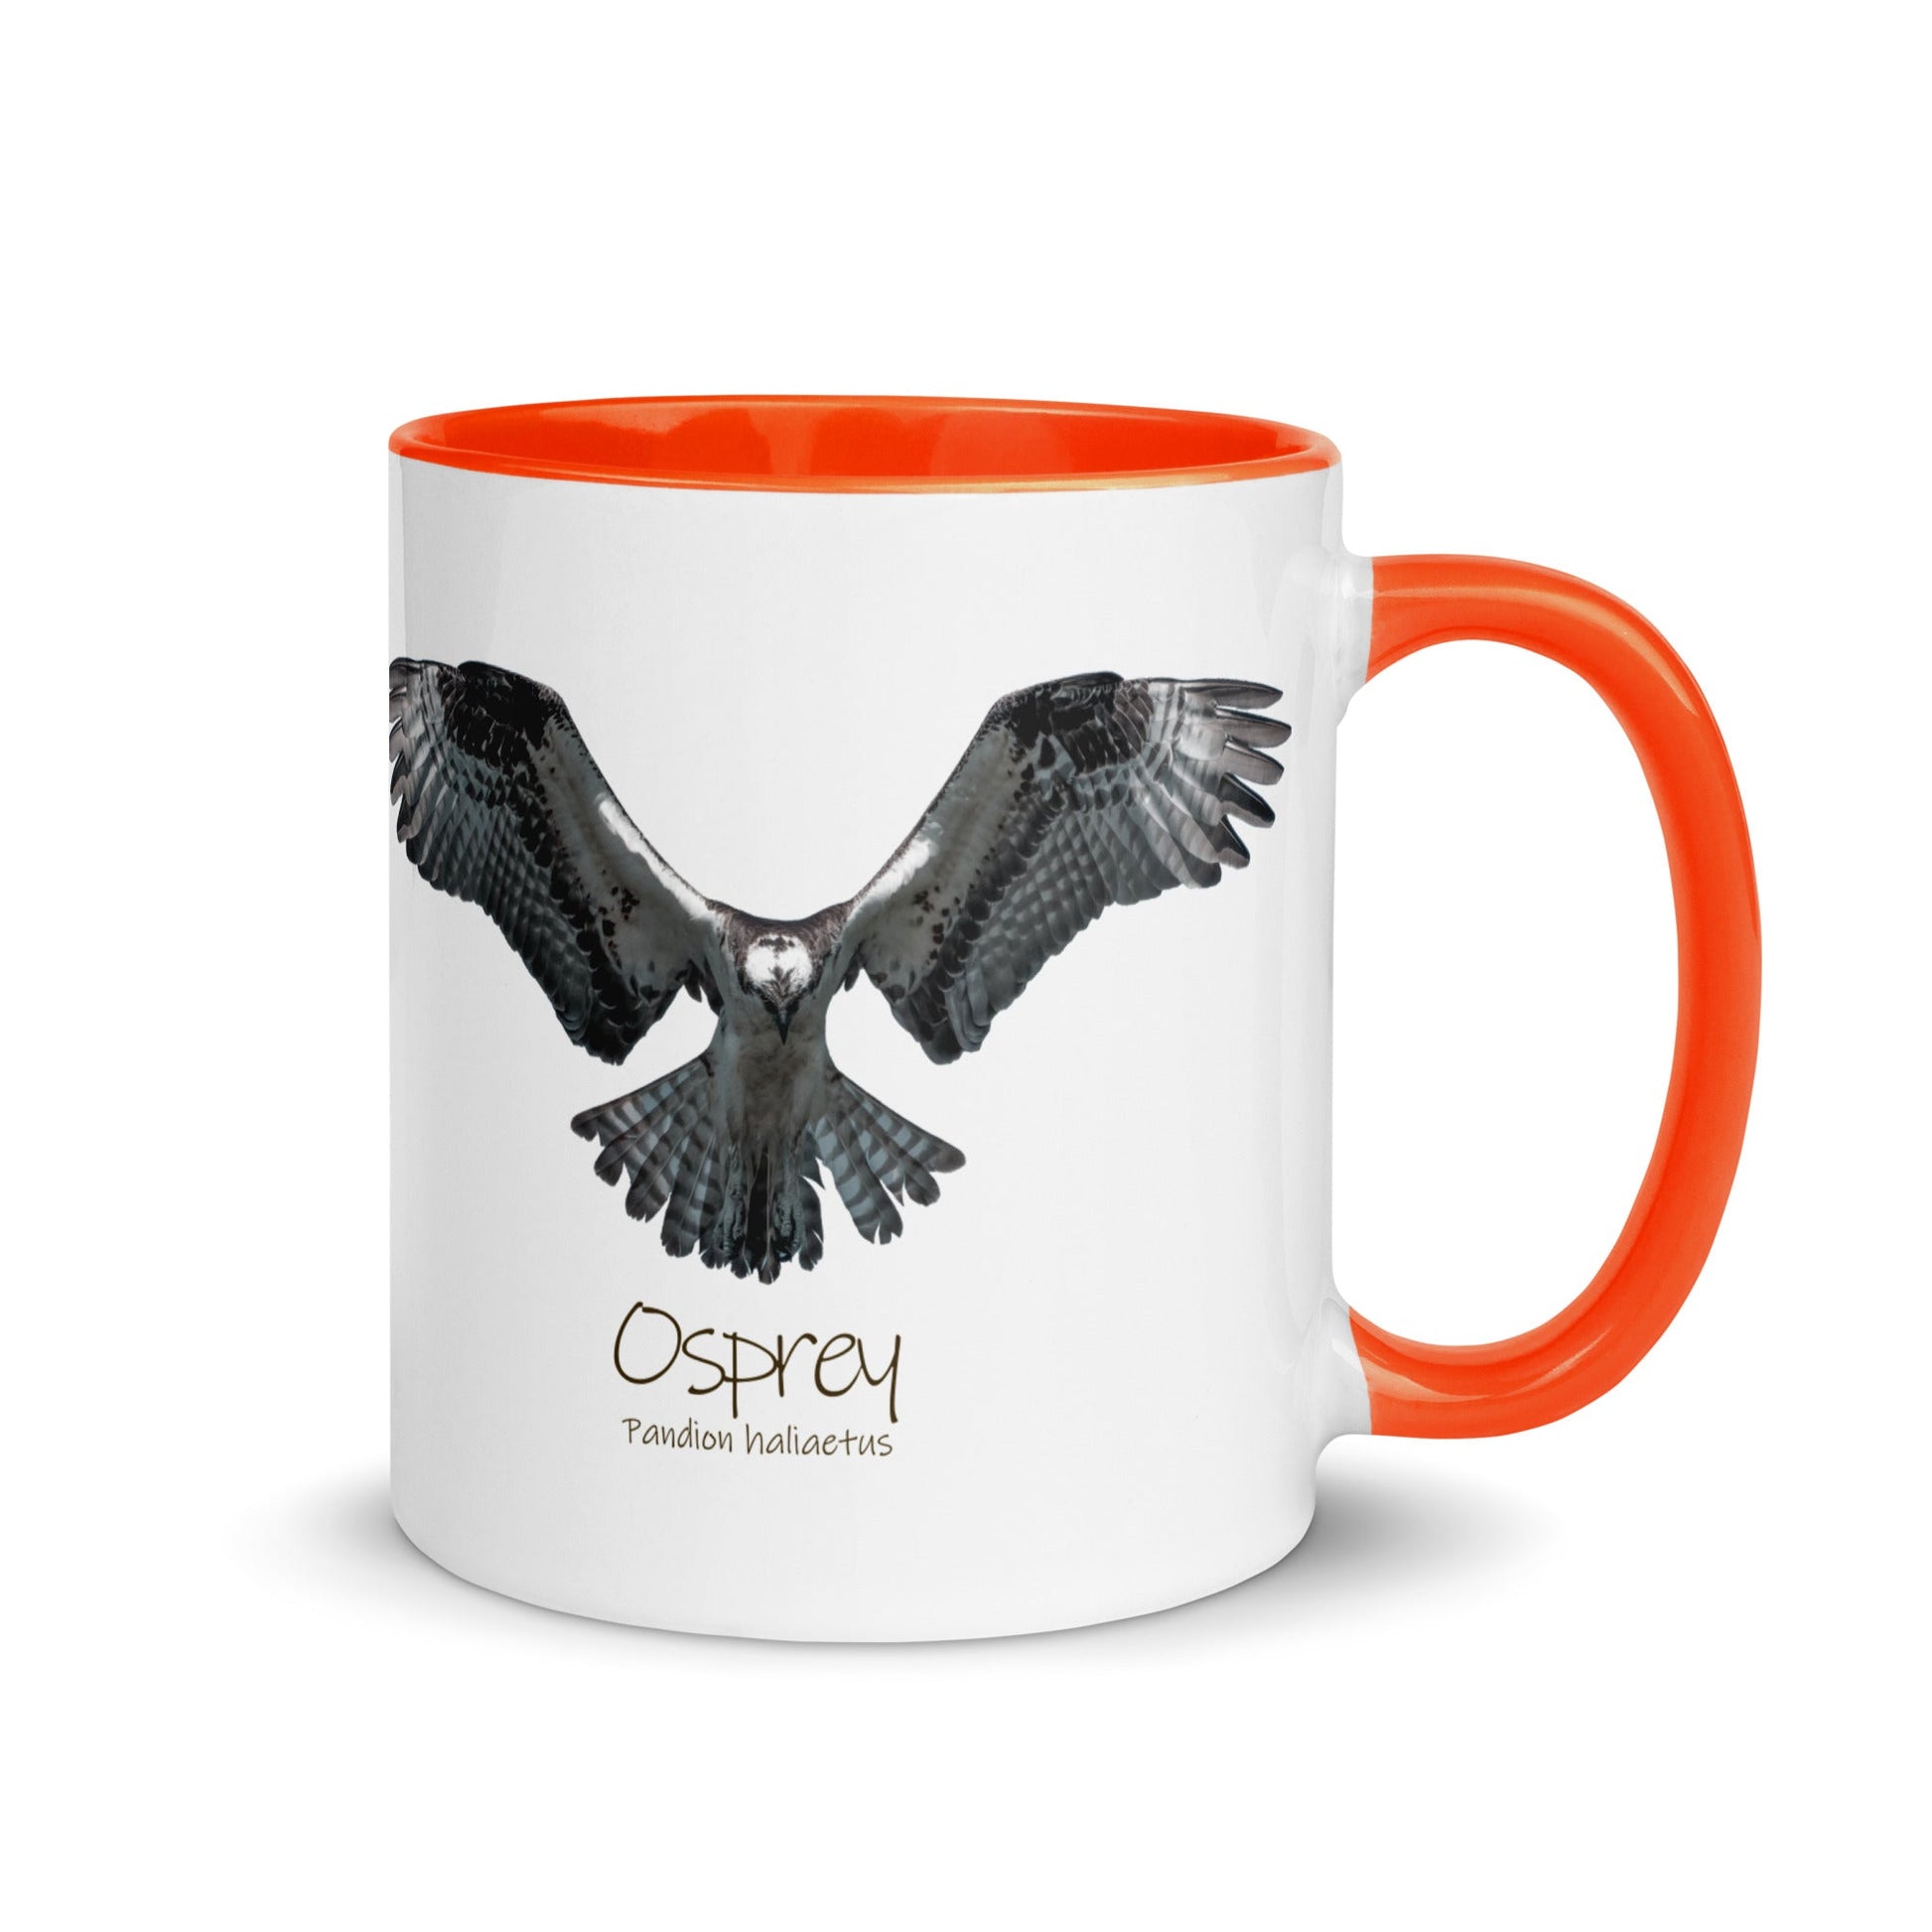 Osprey Hover Mug with Color Inside